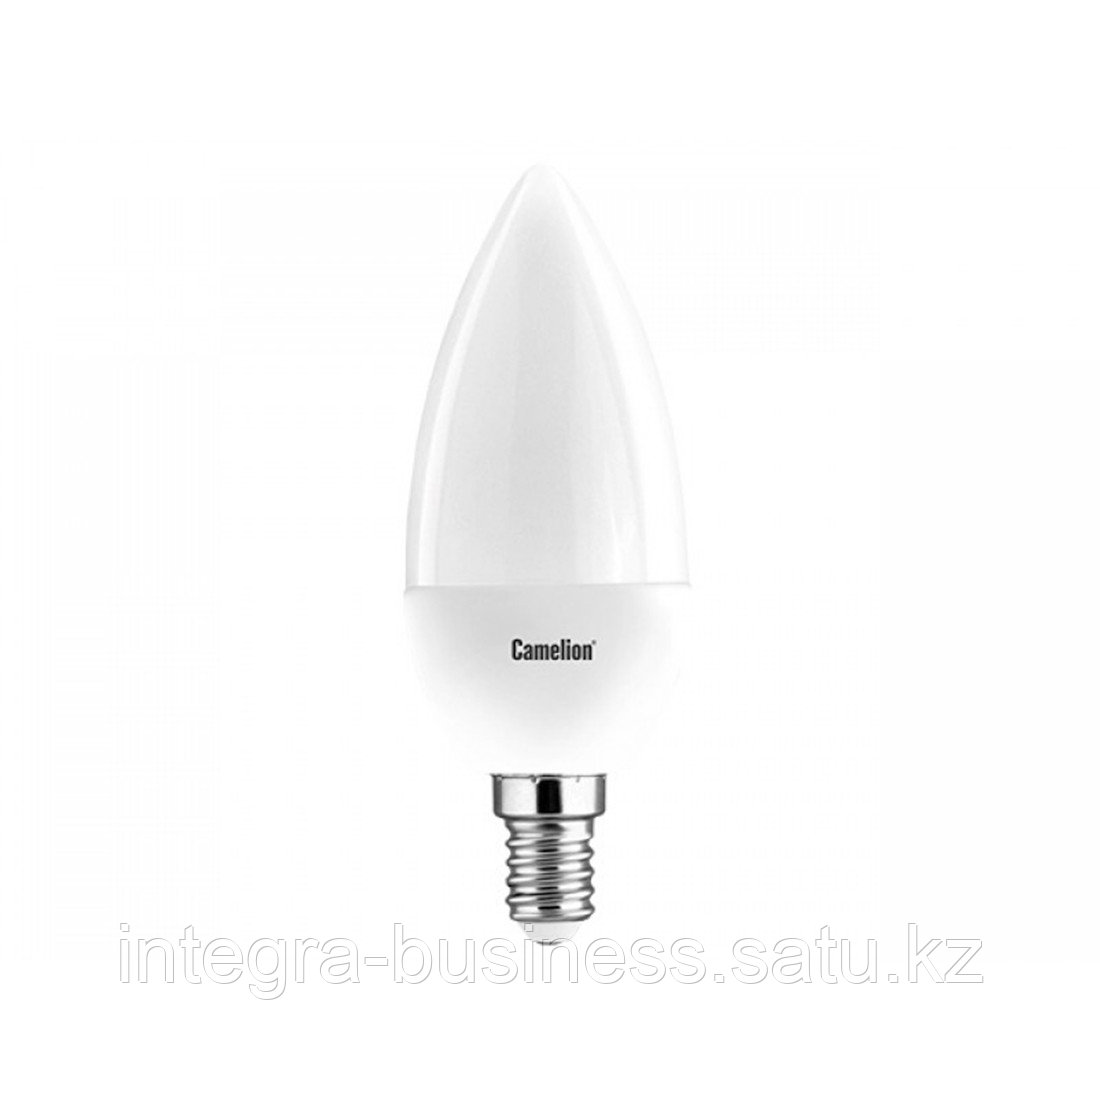 Эл. лампа светодиодная Camelion LED7-C35/845/E14, Холодный